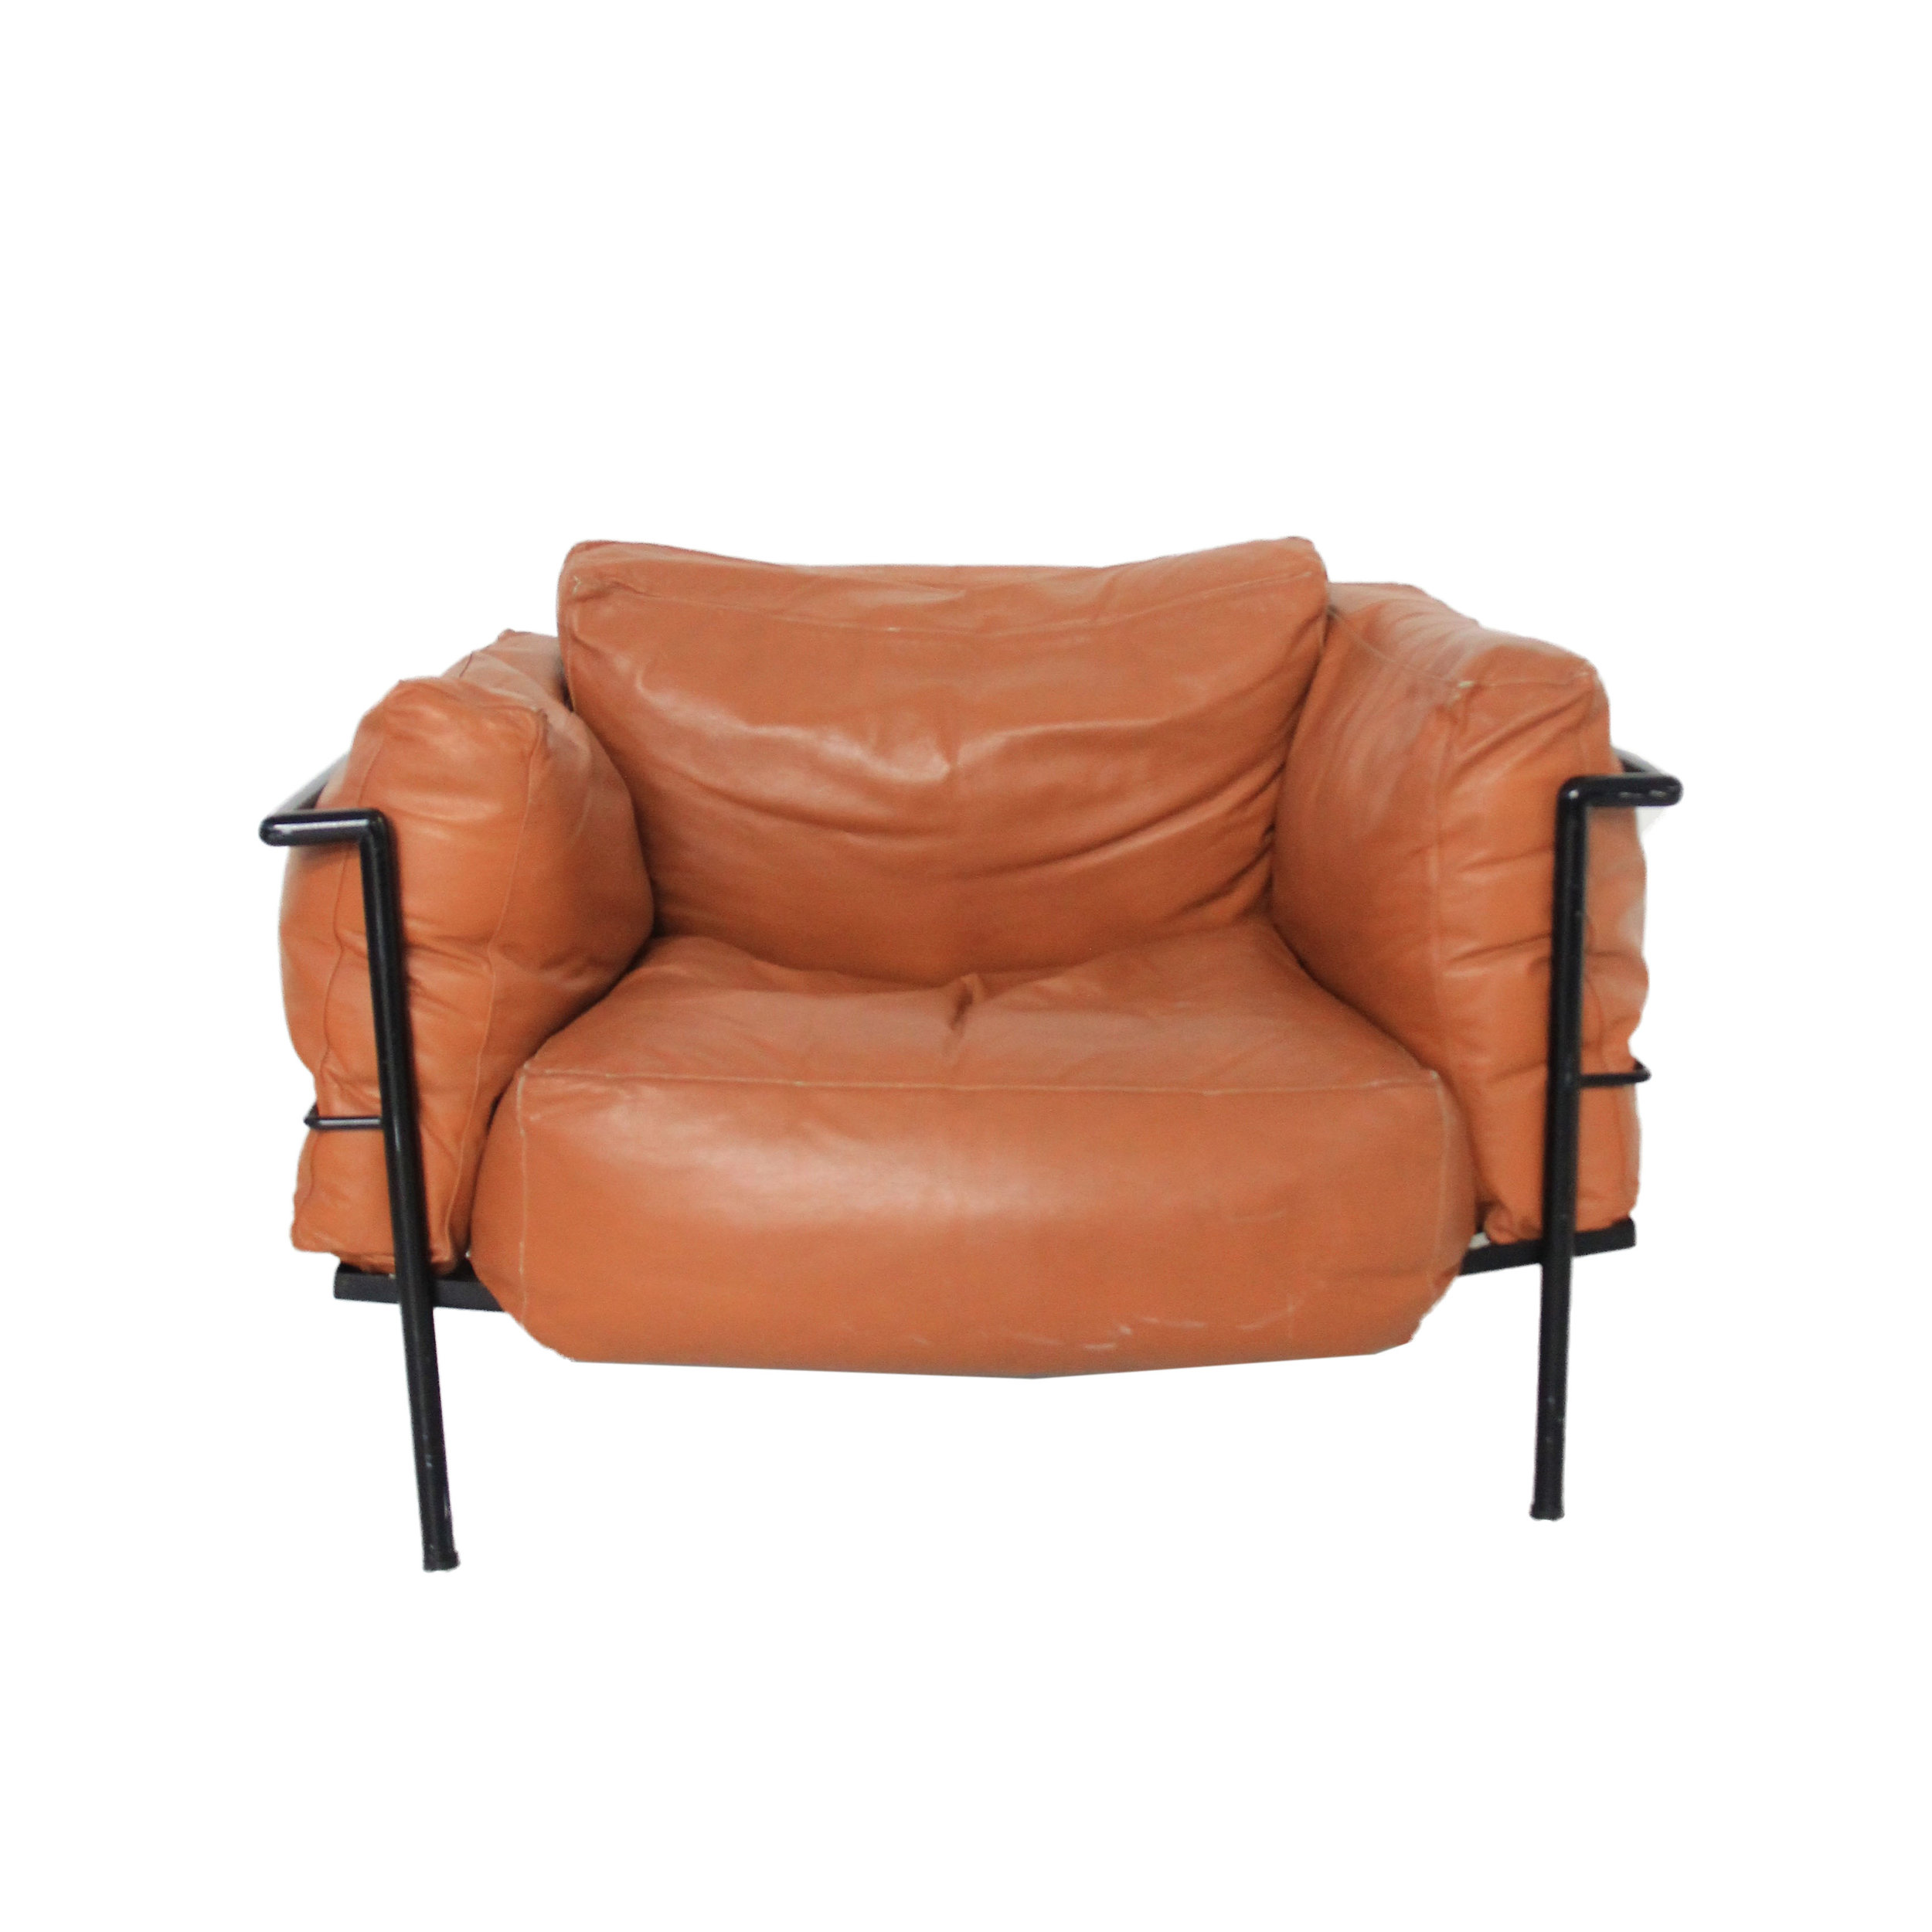 vintage leather cognac chair.jpg